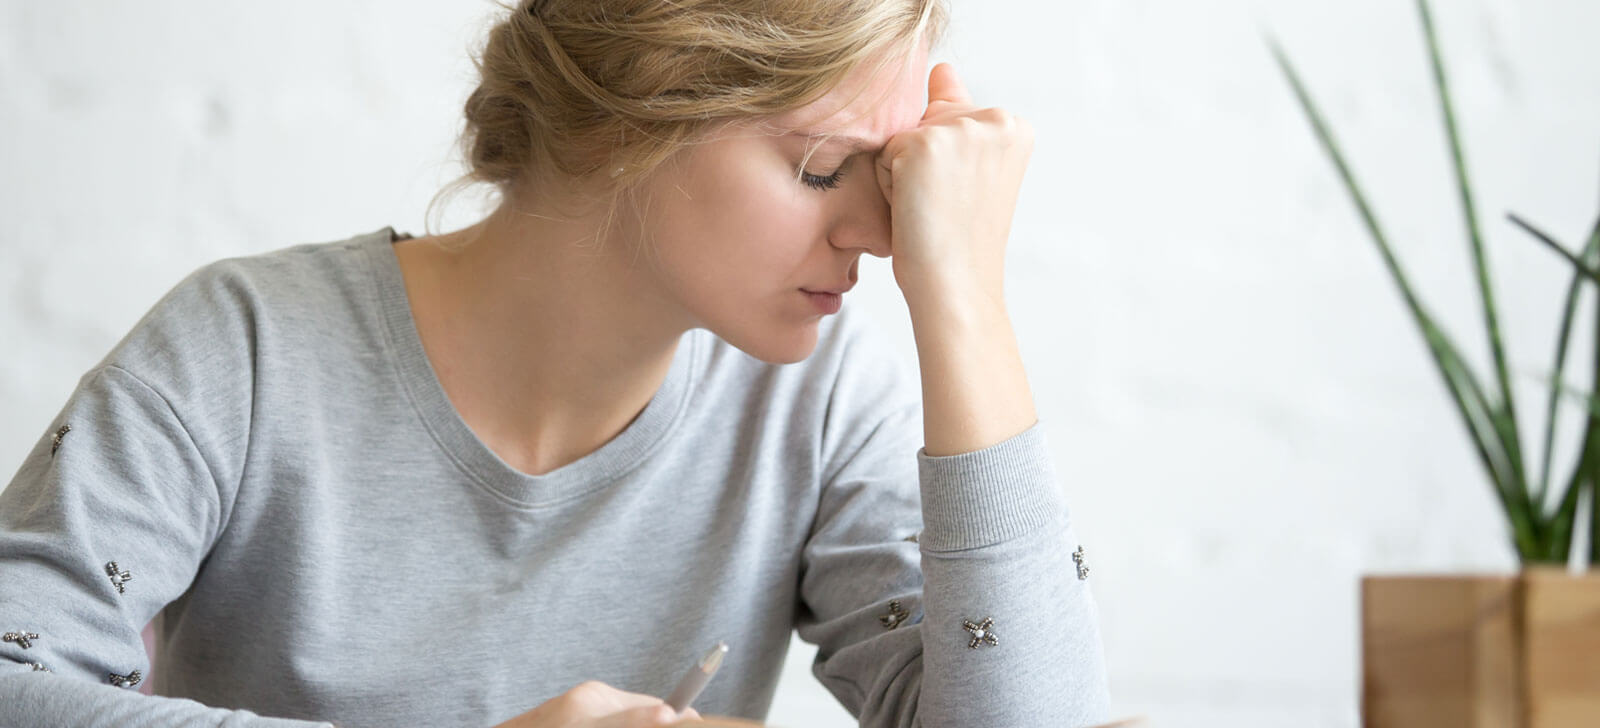 Saiba o que é estresse, suas principais causas e sintomas